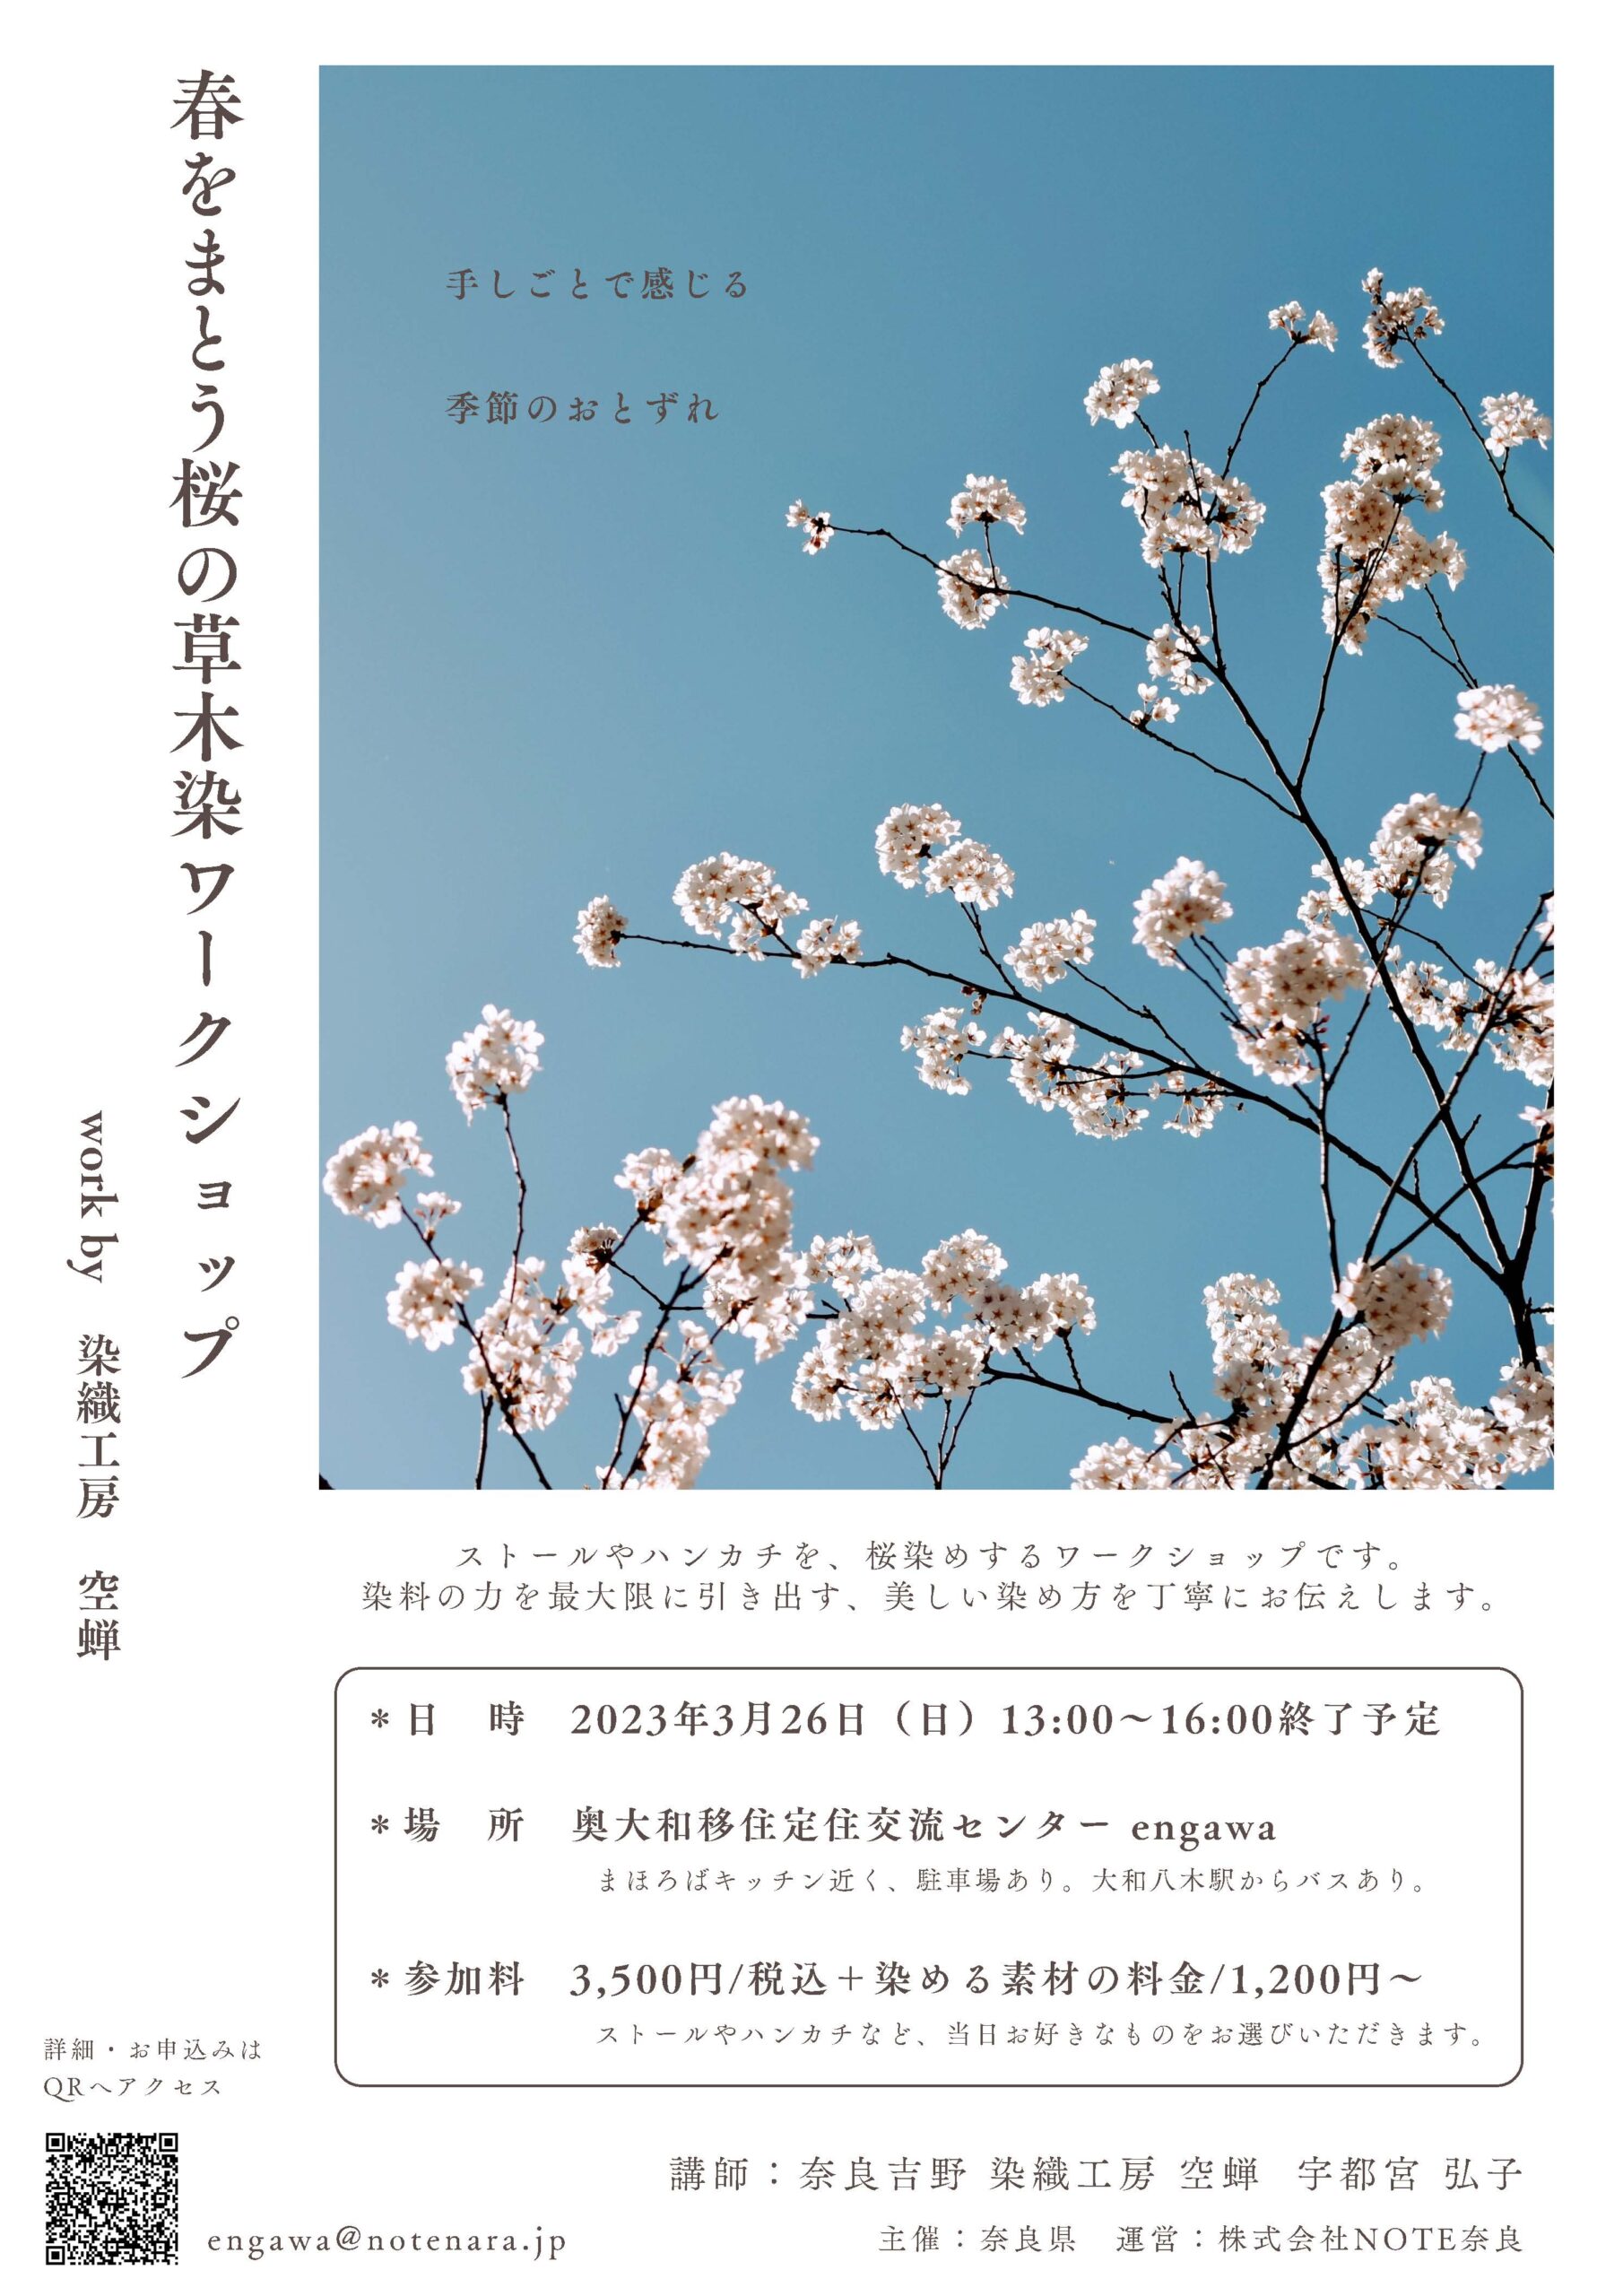 3/26『春をまとう桜の草木染めワークショップ』のお知らせ